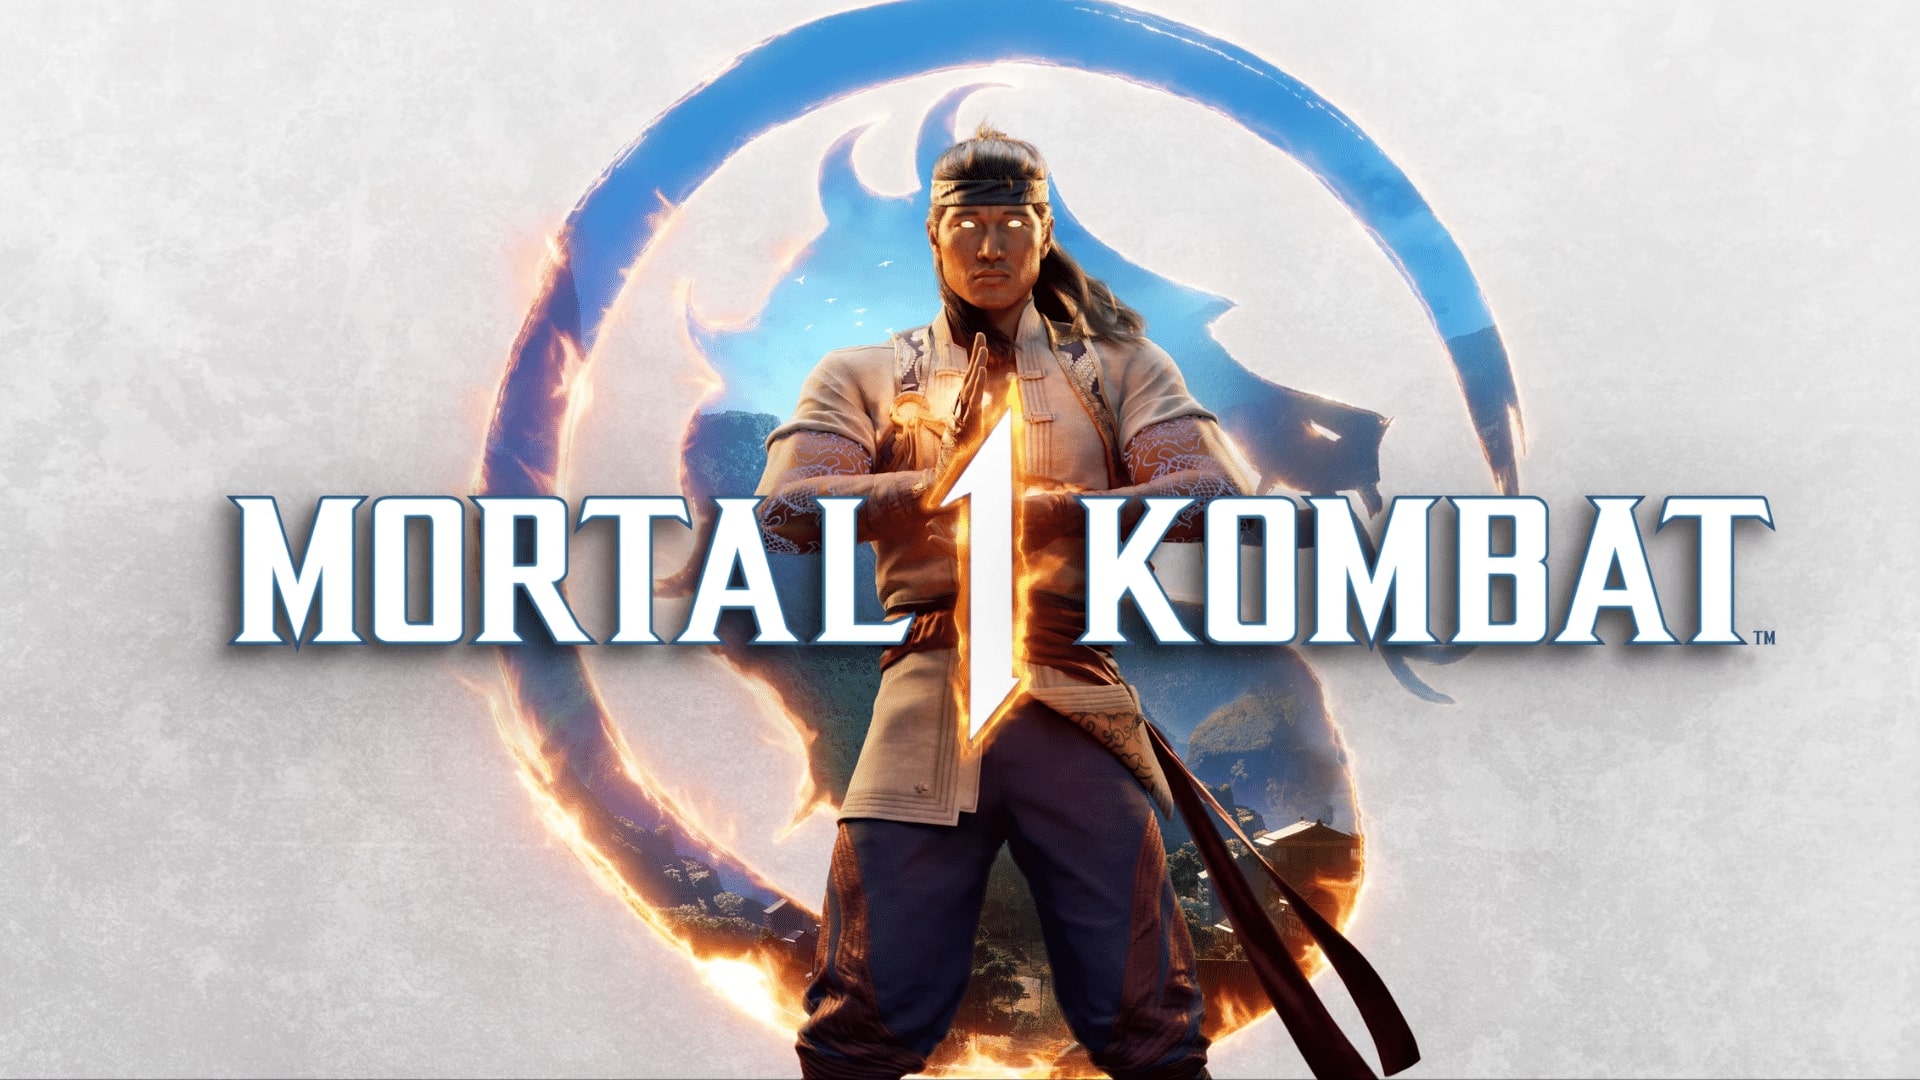 بررسی بازی Mortal Kombat 1